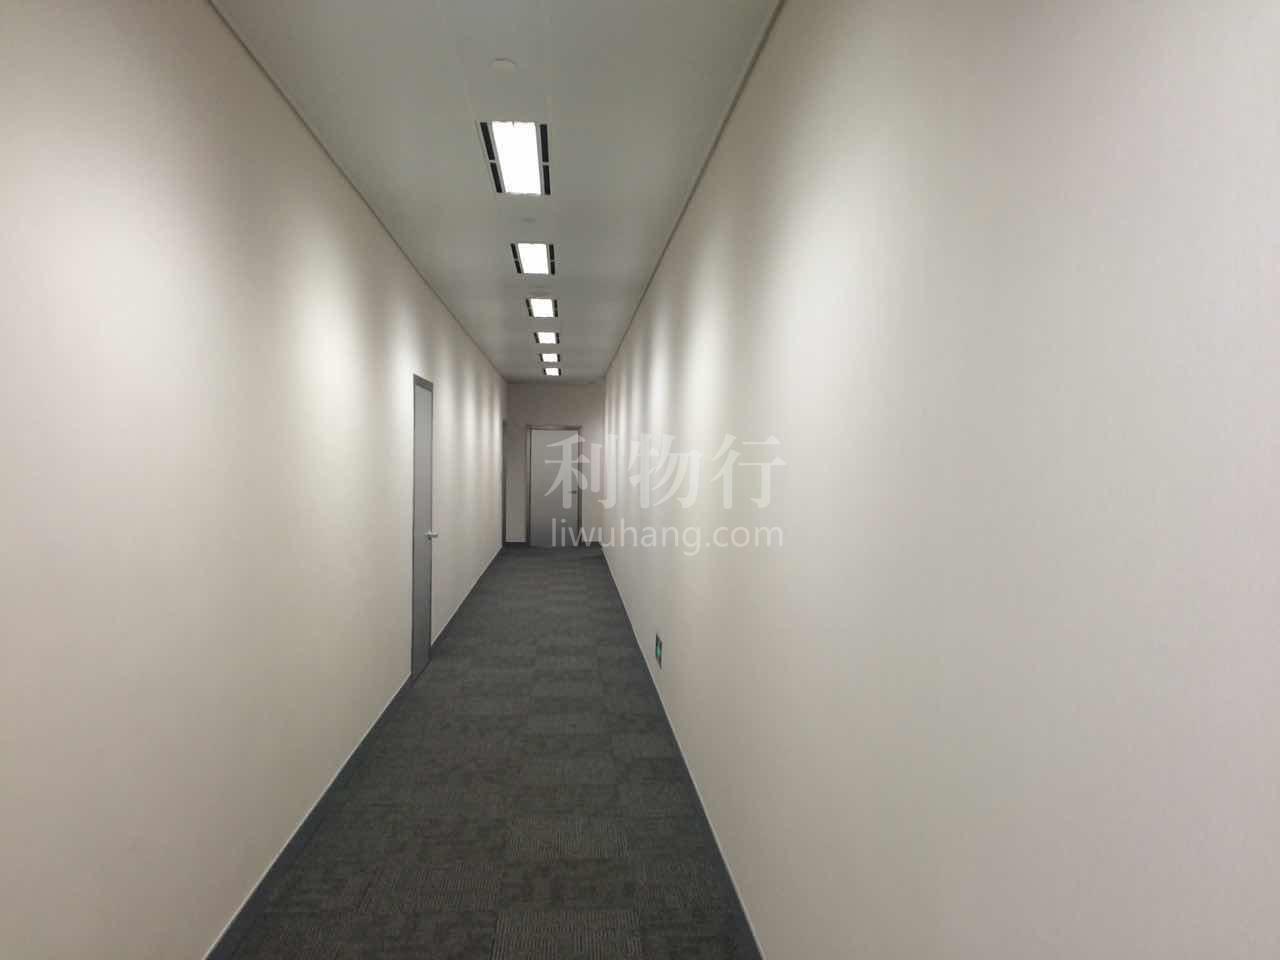 会德丰国际广场写字楼319m2办公室9.80元/m2/天 中等装修